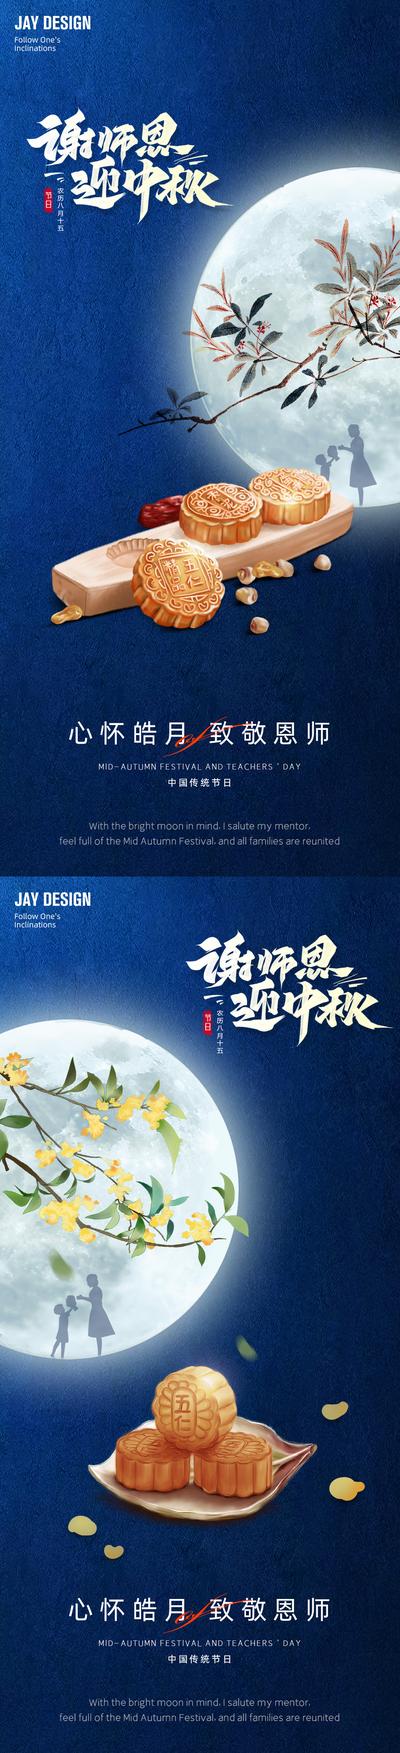 南门网 广告 海报 电商 地产 医美 旅游 节日 中式 国潮 中国风 质感